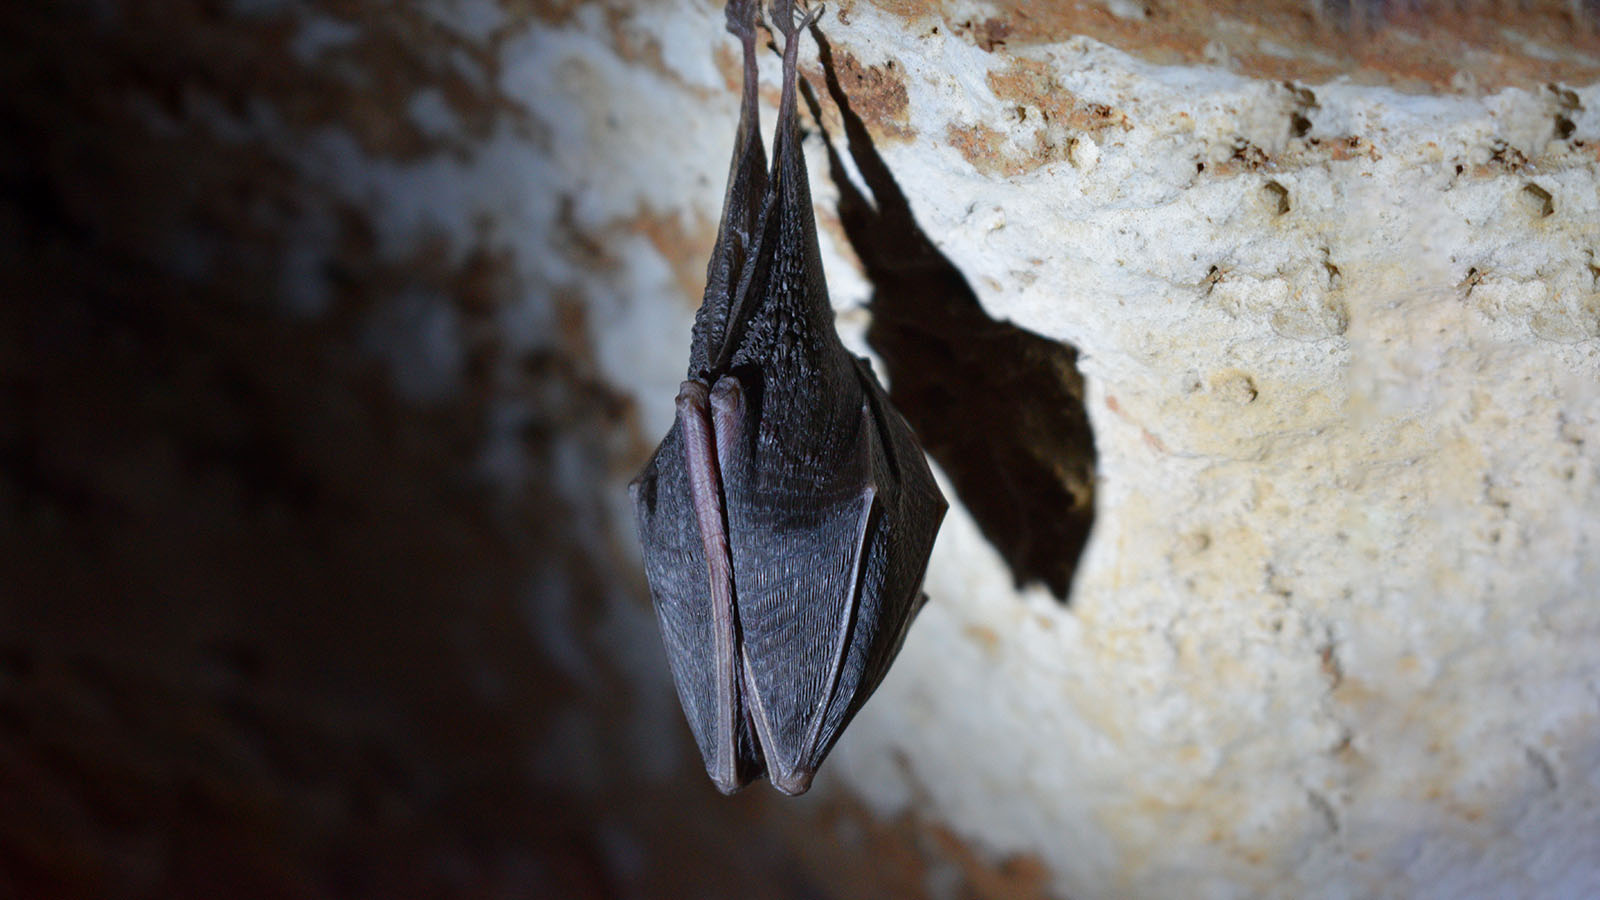 ‪الخفافيش تعيش غالبا في مستعمرات ضخمة بالكهوف مما يجعل ظروف الازدحام مثالية لنقل الأمراض فيما‬ بينها (مواقع التواصل)